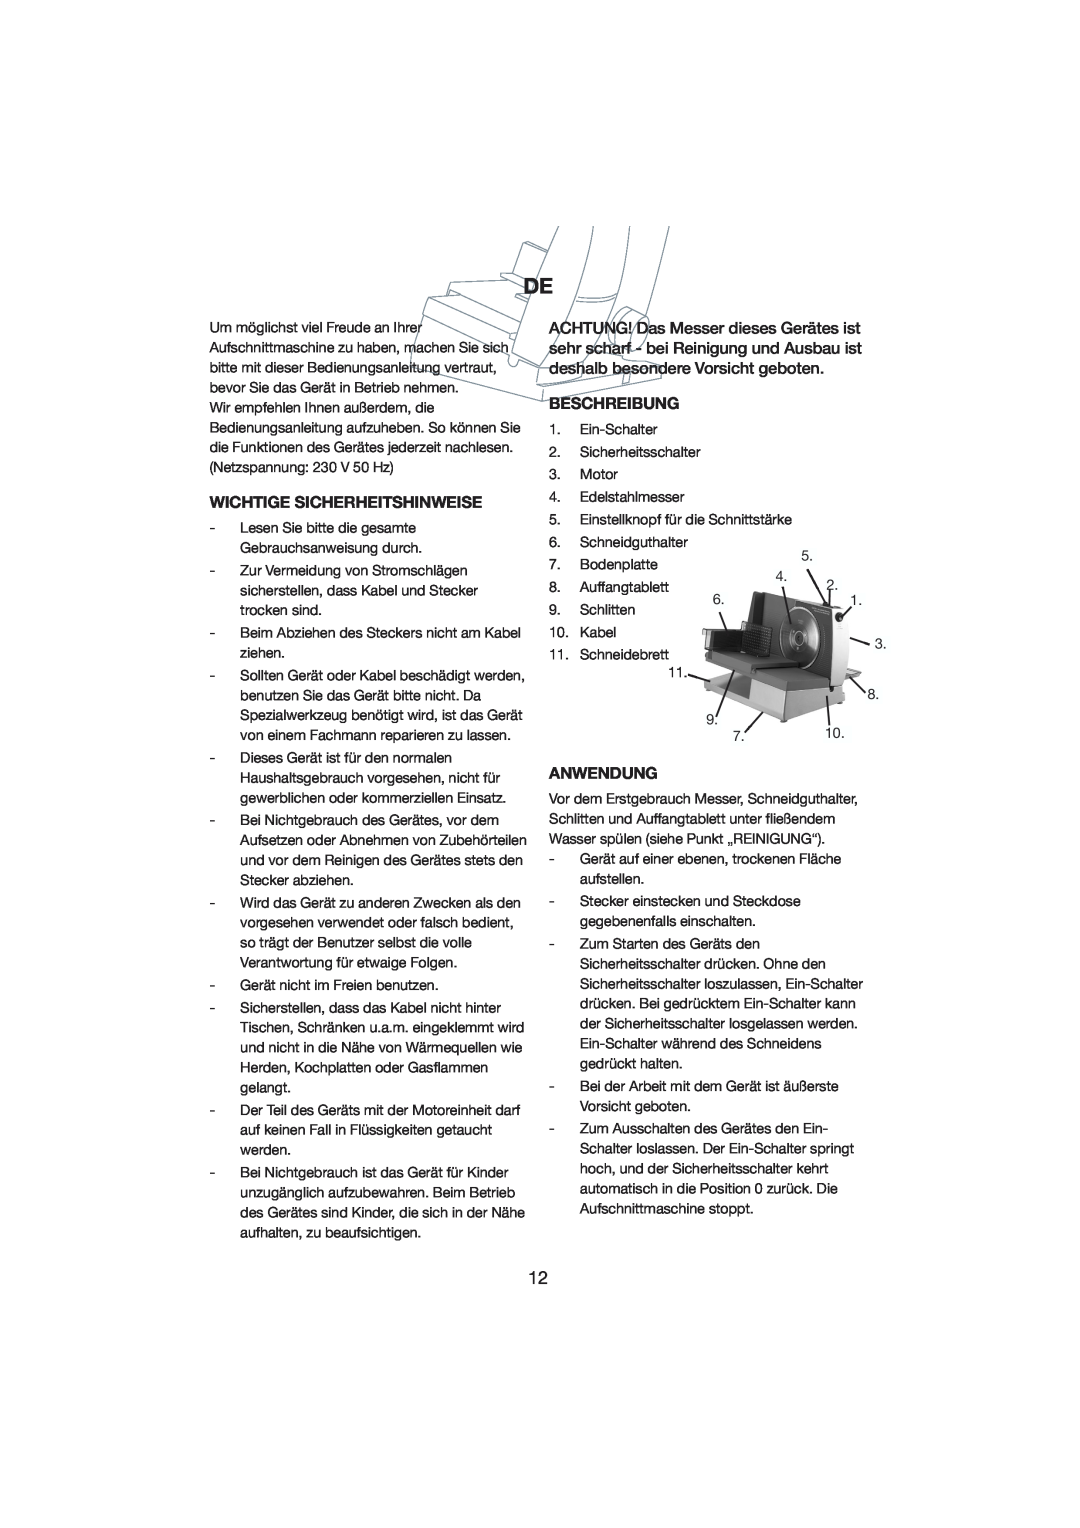 Melissa 246-006 manual Wichtige Sicherheitshinweise, Beschreibung, Anwendung 